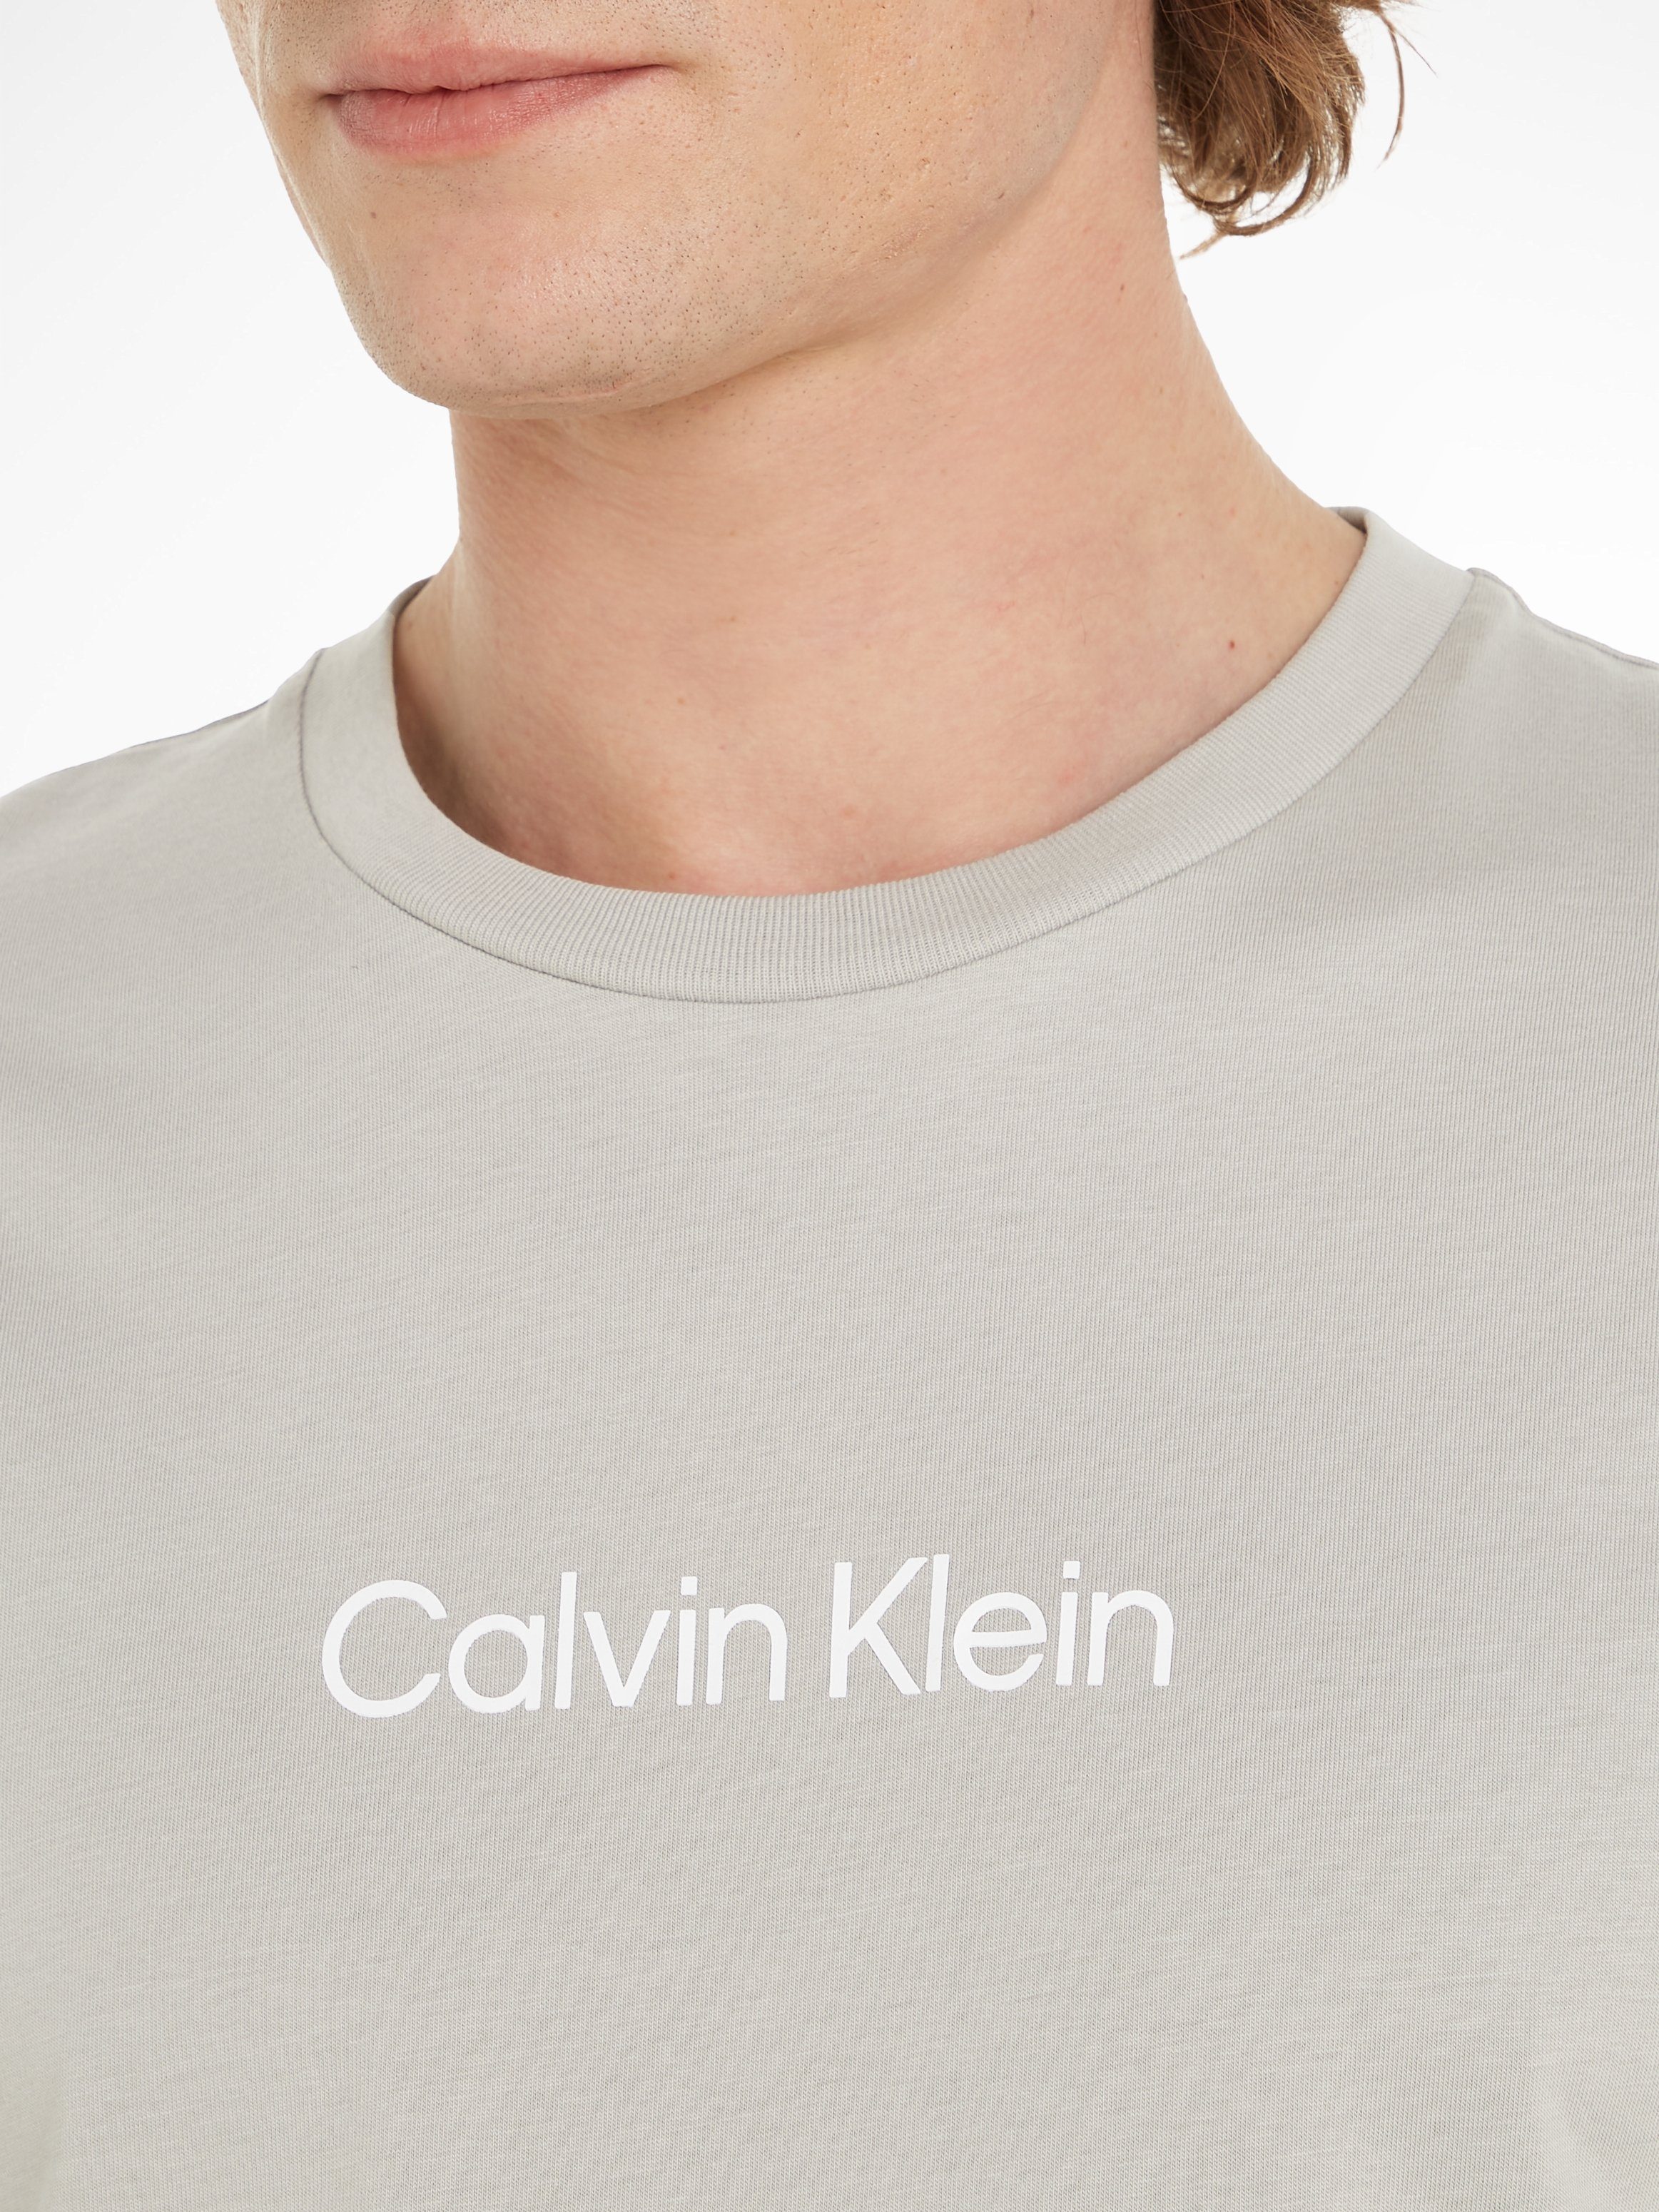 Calvin Klein T-Shirt HERO LOGO COMFORT Markenlabel aufgedrucktem mit Gray T-SHIRT Ghost